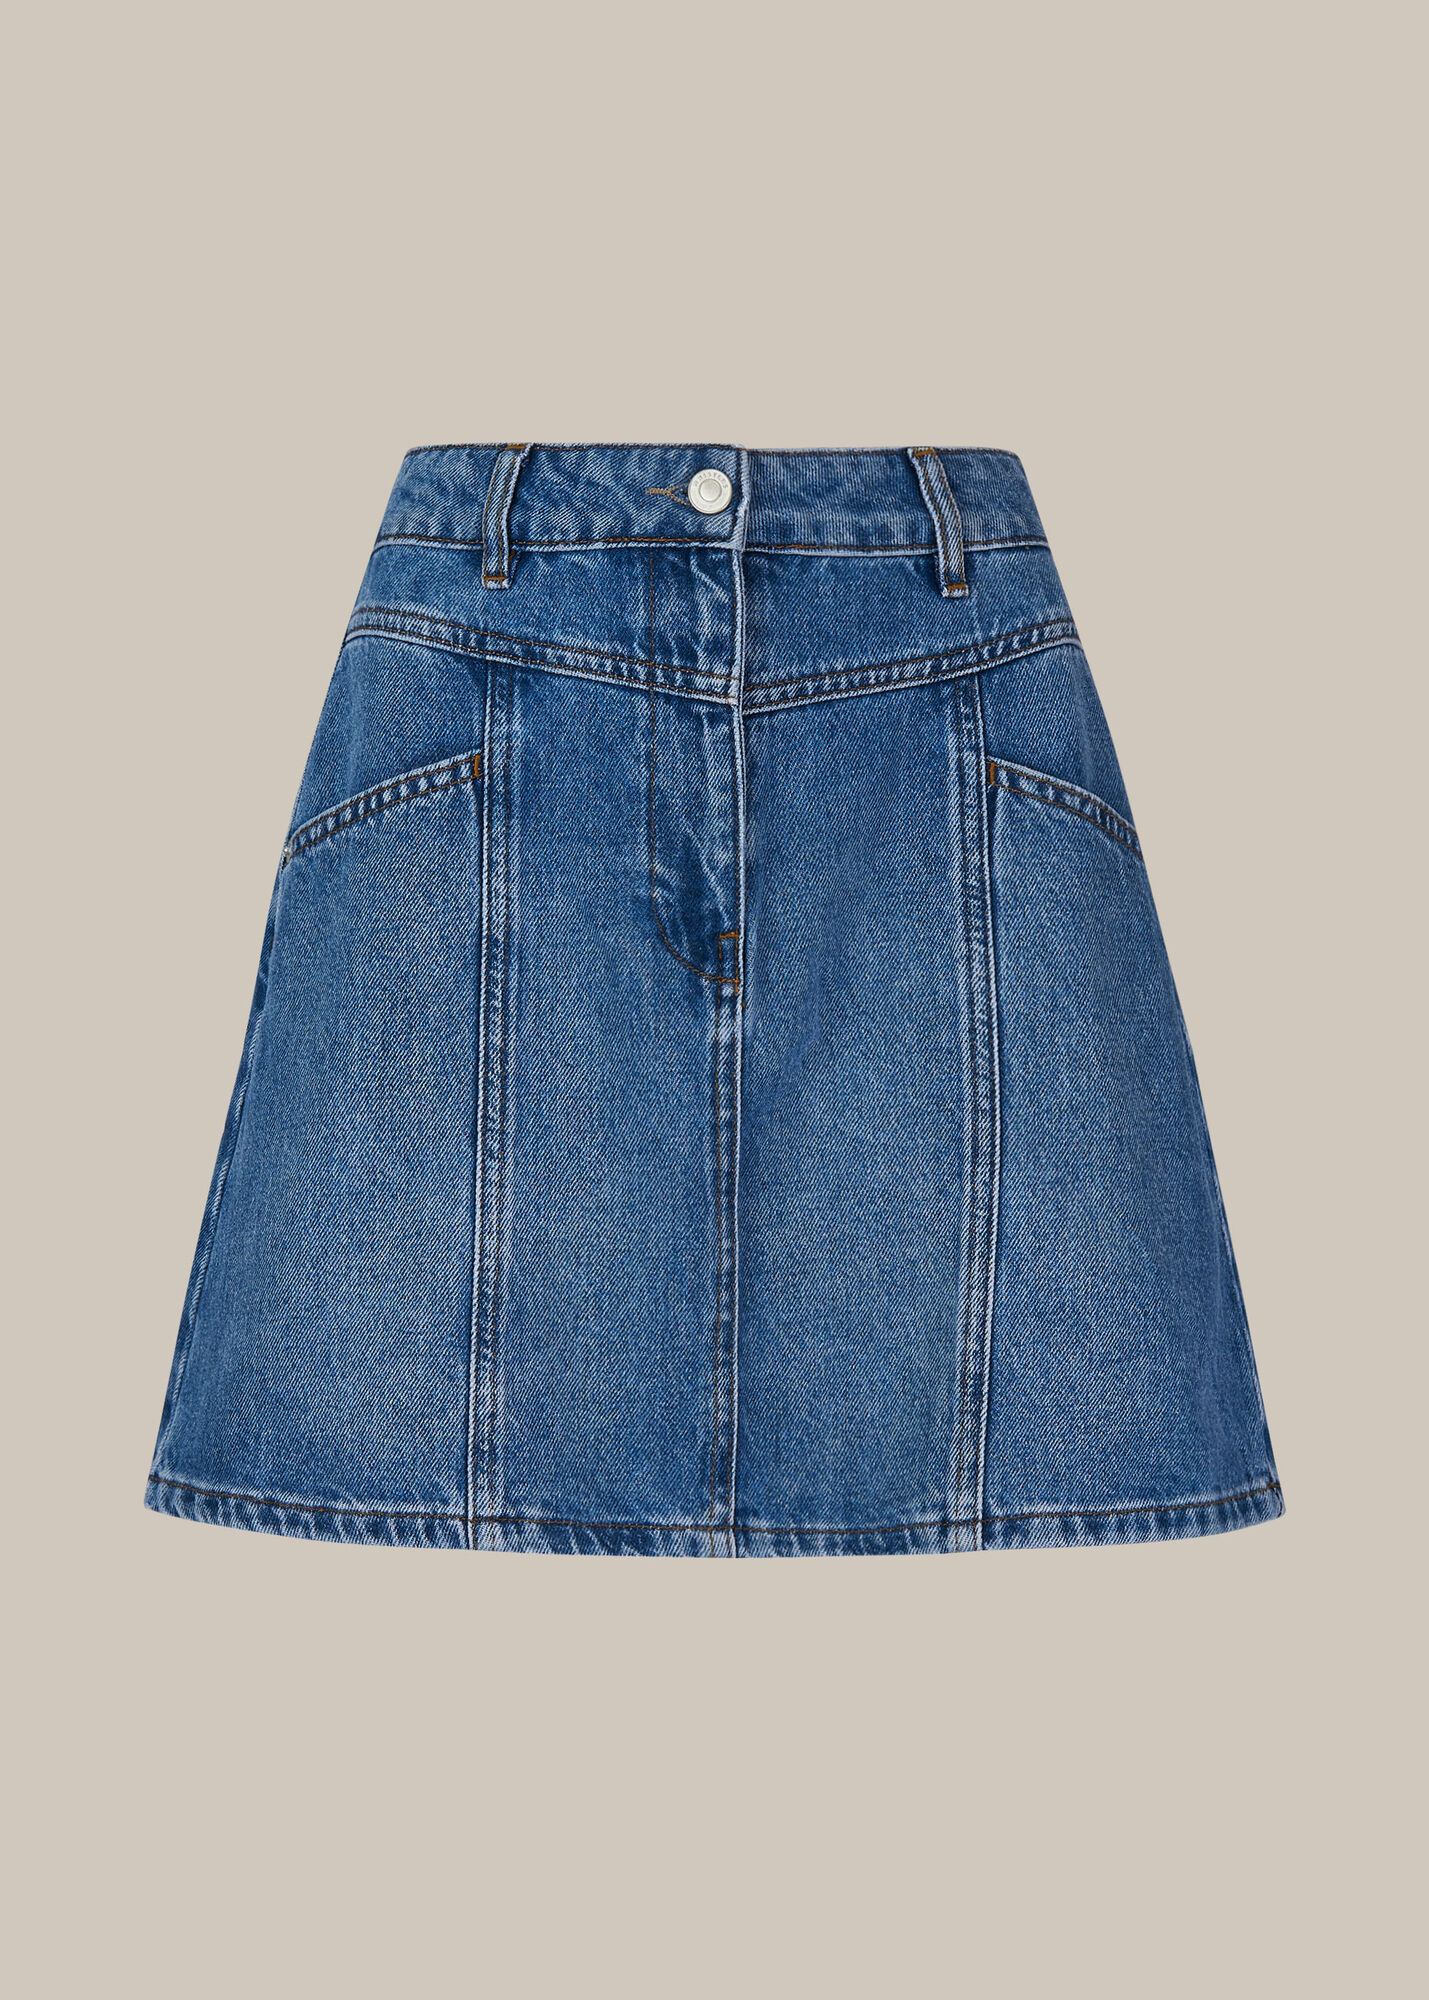 Seam Detail Denim Skirt | WHISTLES | Whistles UK